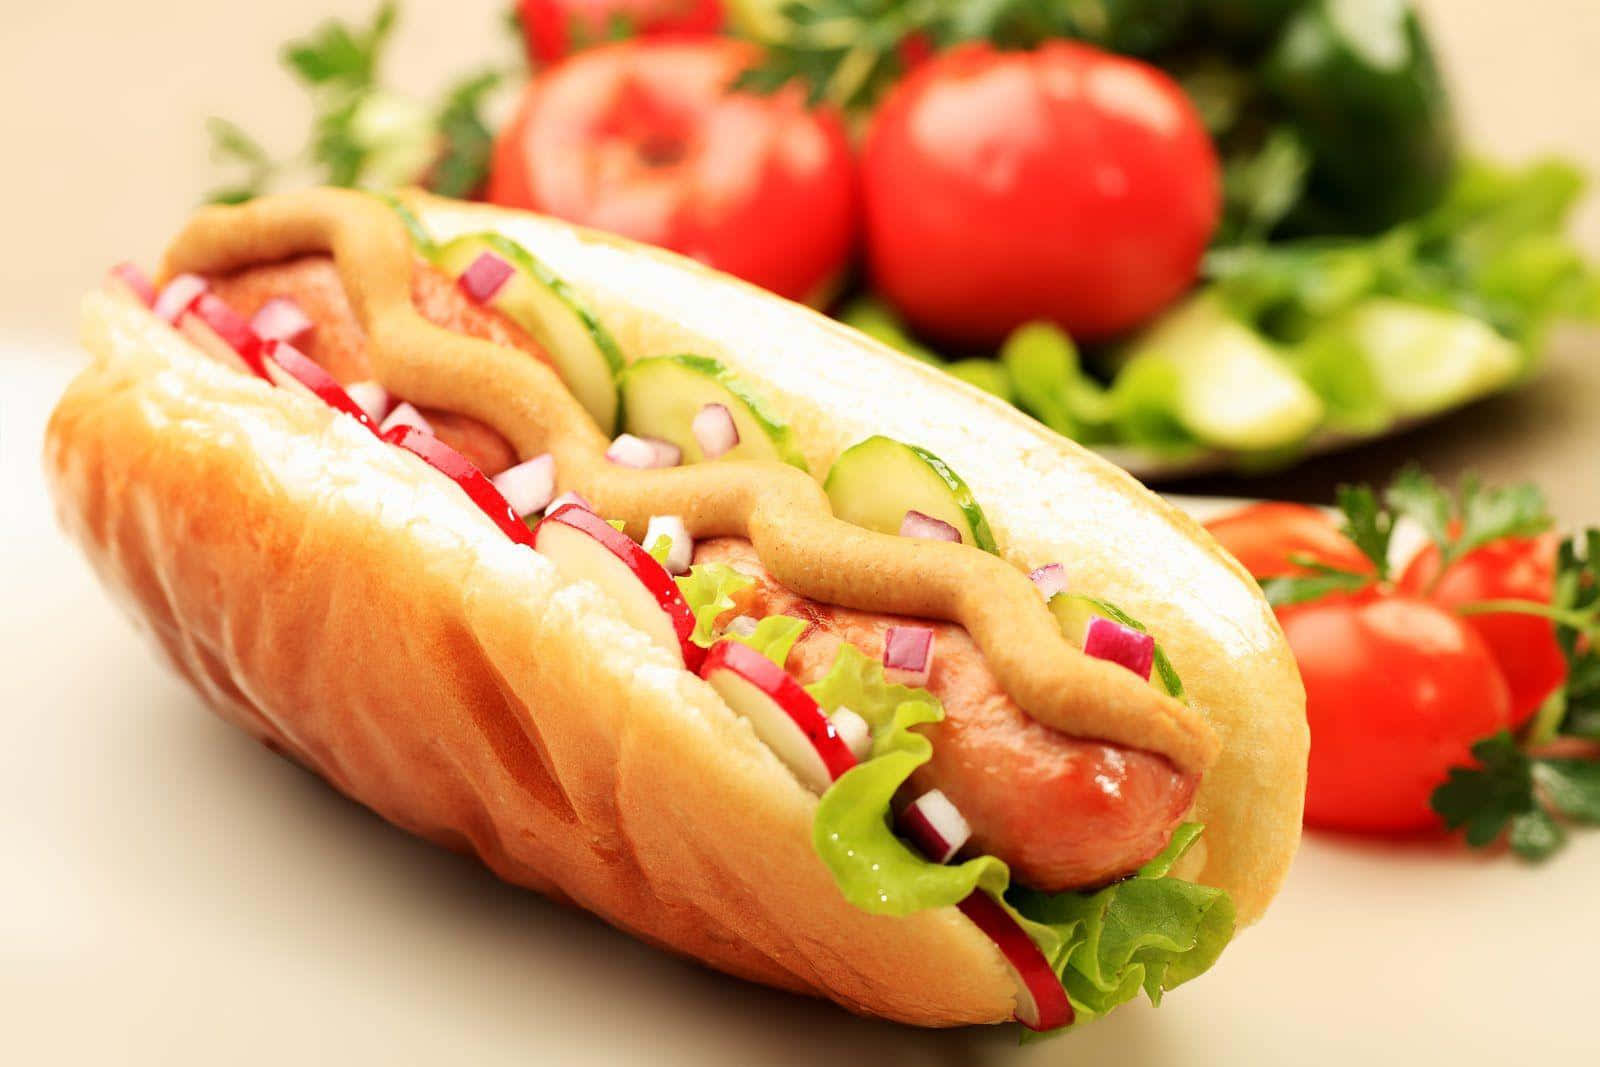 Assaporaun Morso Di Questo Succulento Hot Dog!